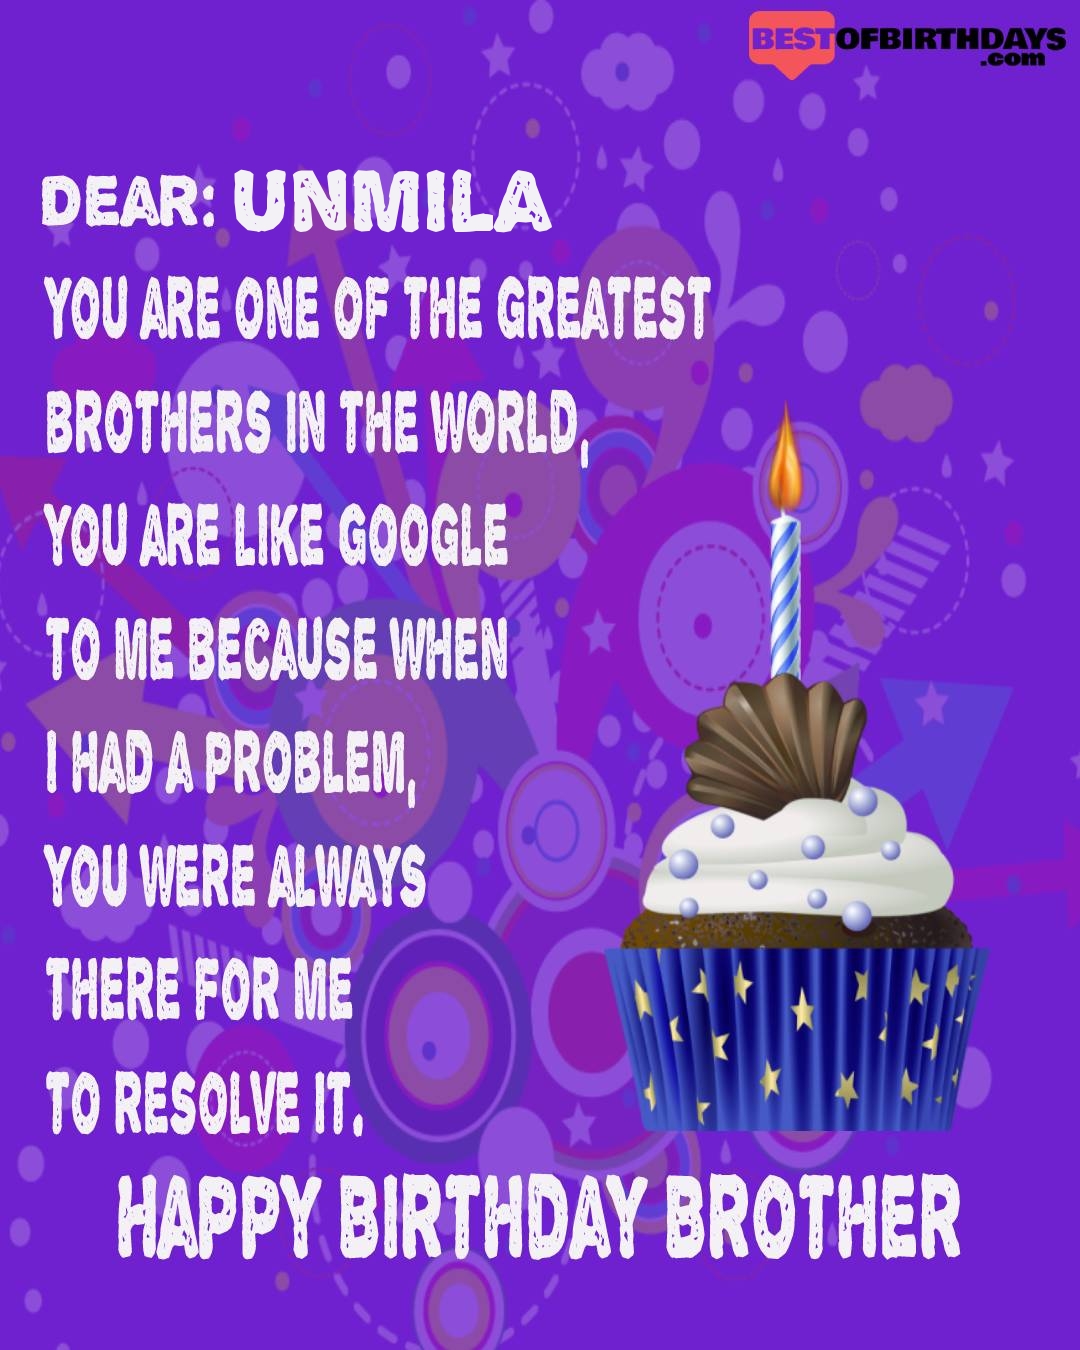 Happy birthday unmila bhai brother bro